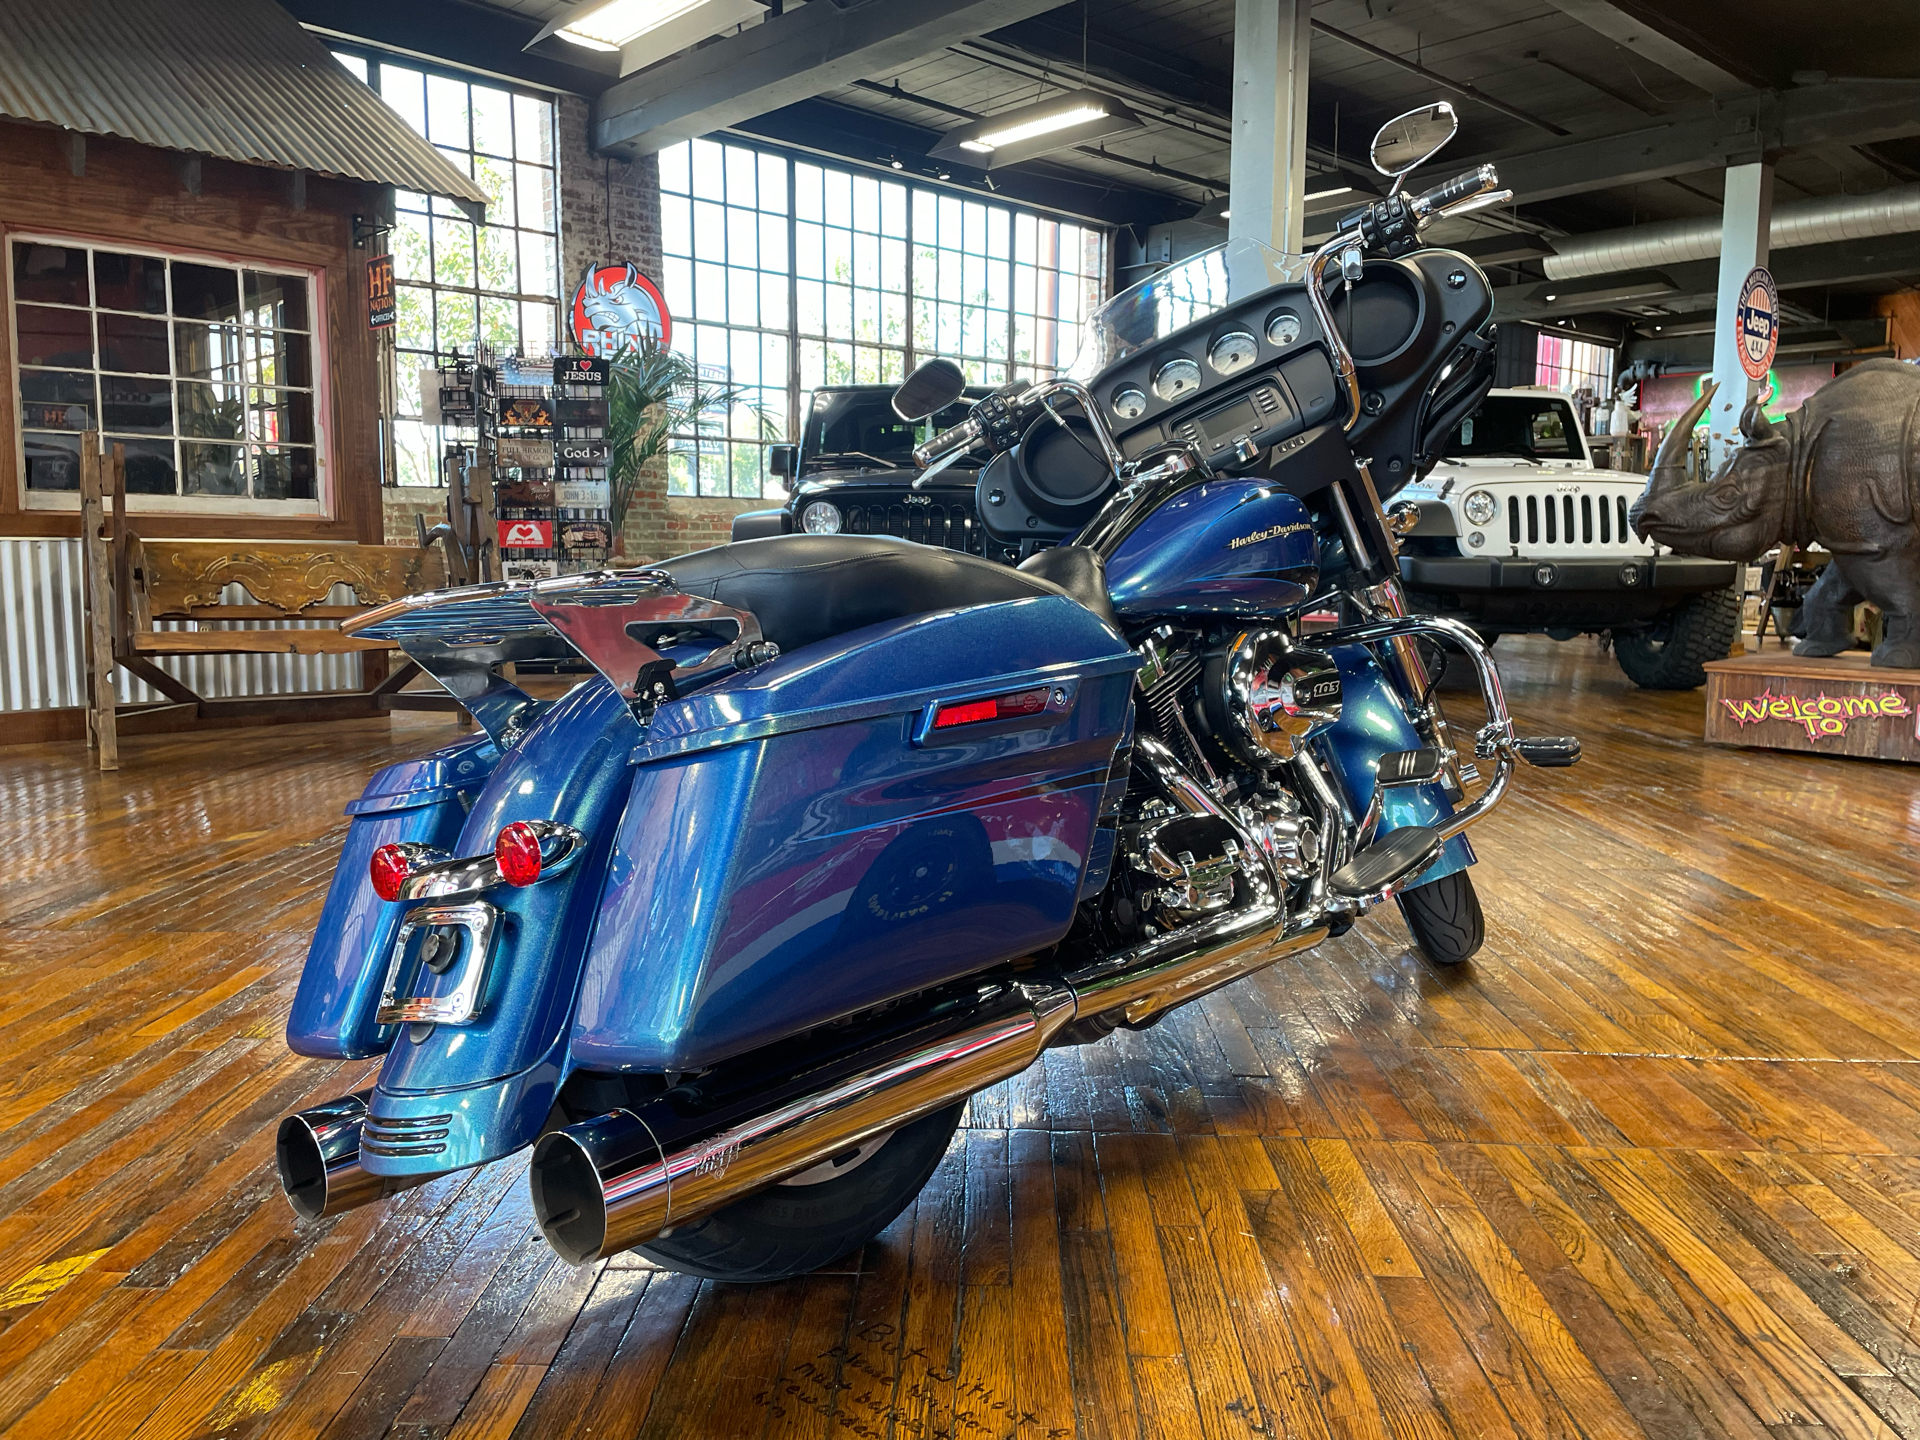 2014 Harley-Davidson Street Glide® in Laurel, Mississippi - Photo 2